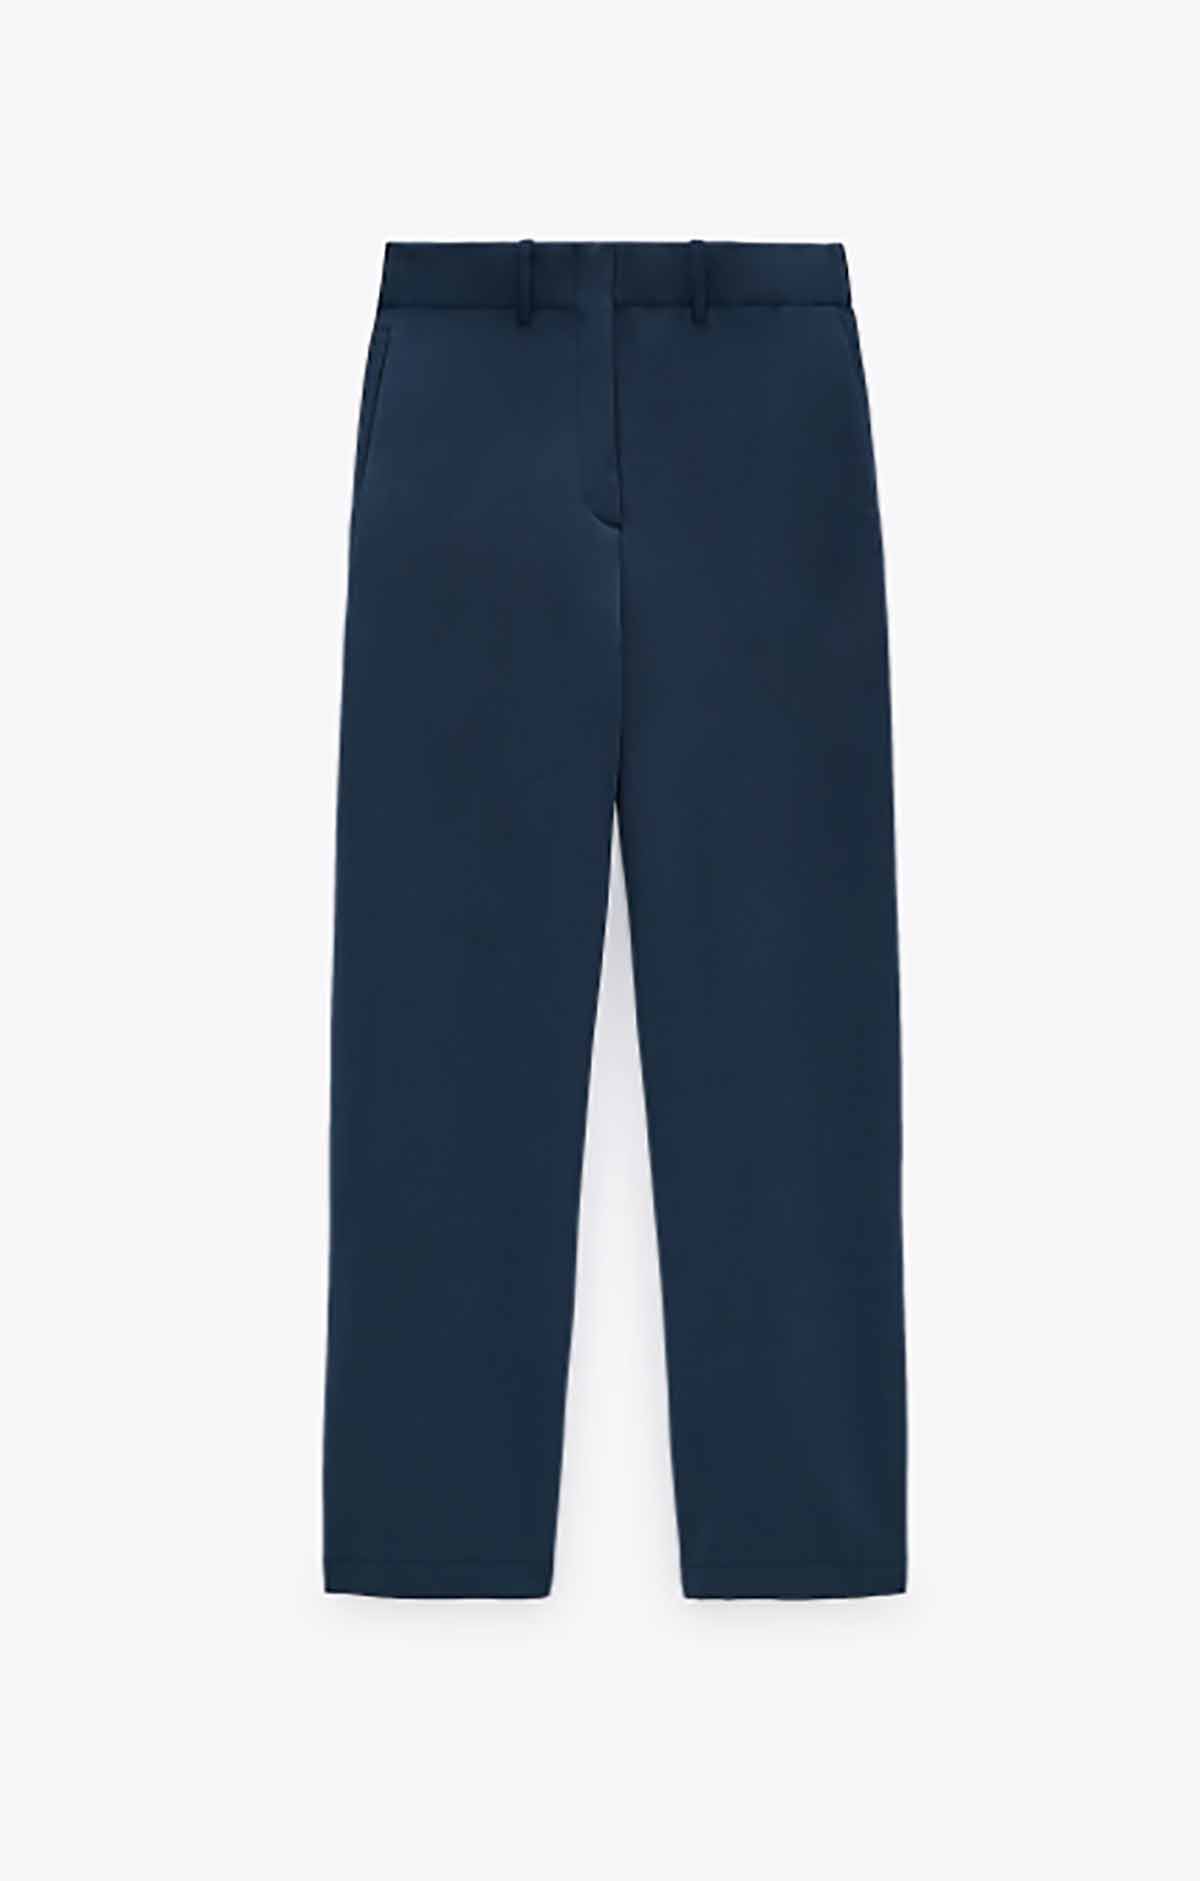 Pantalon Zara 49,99 euros